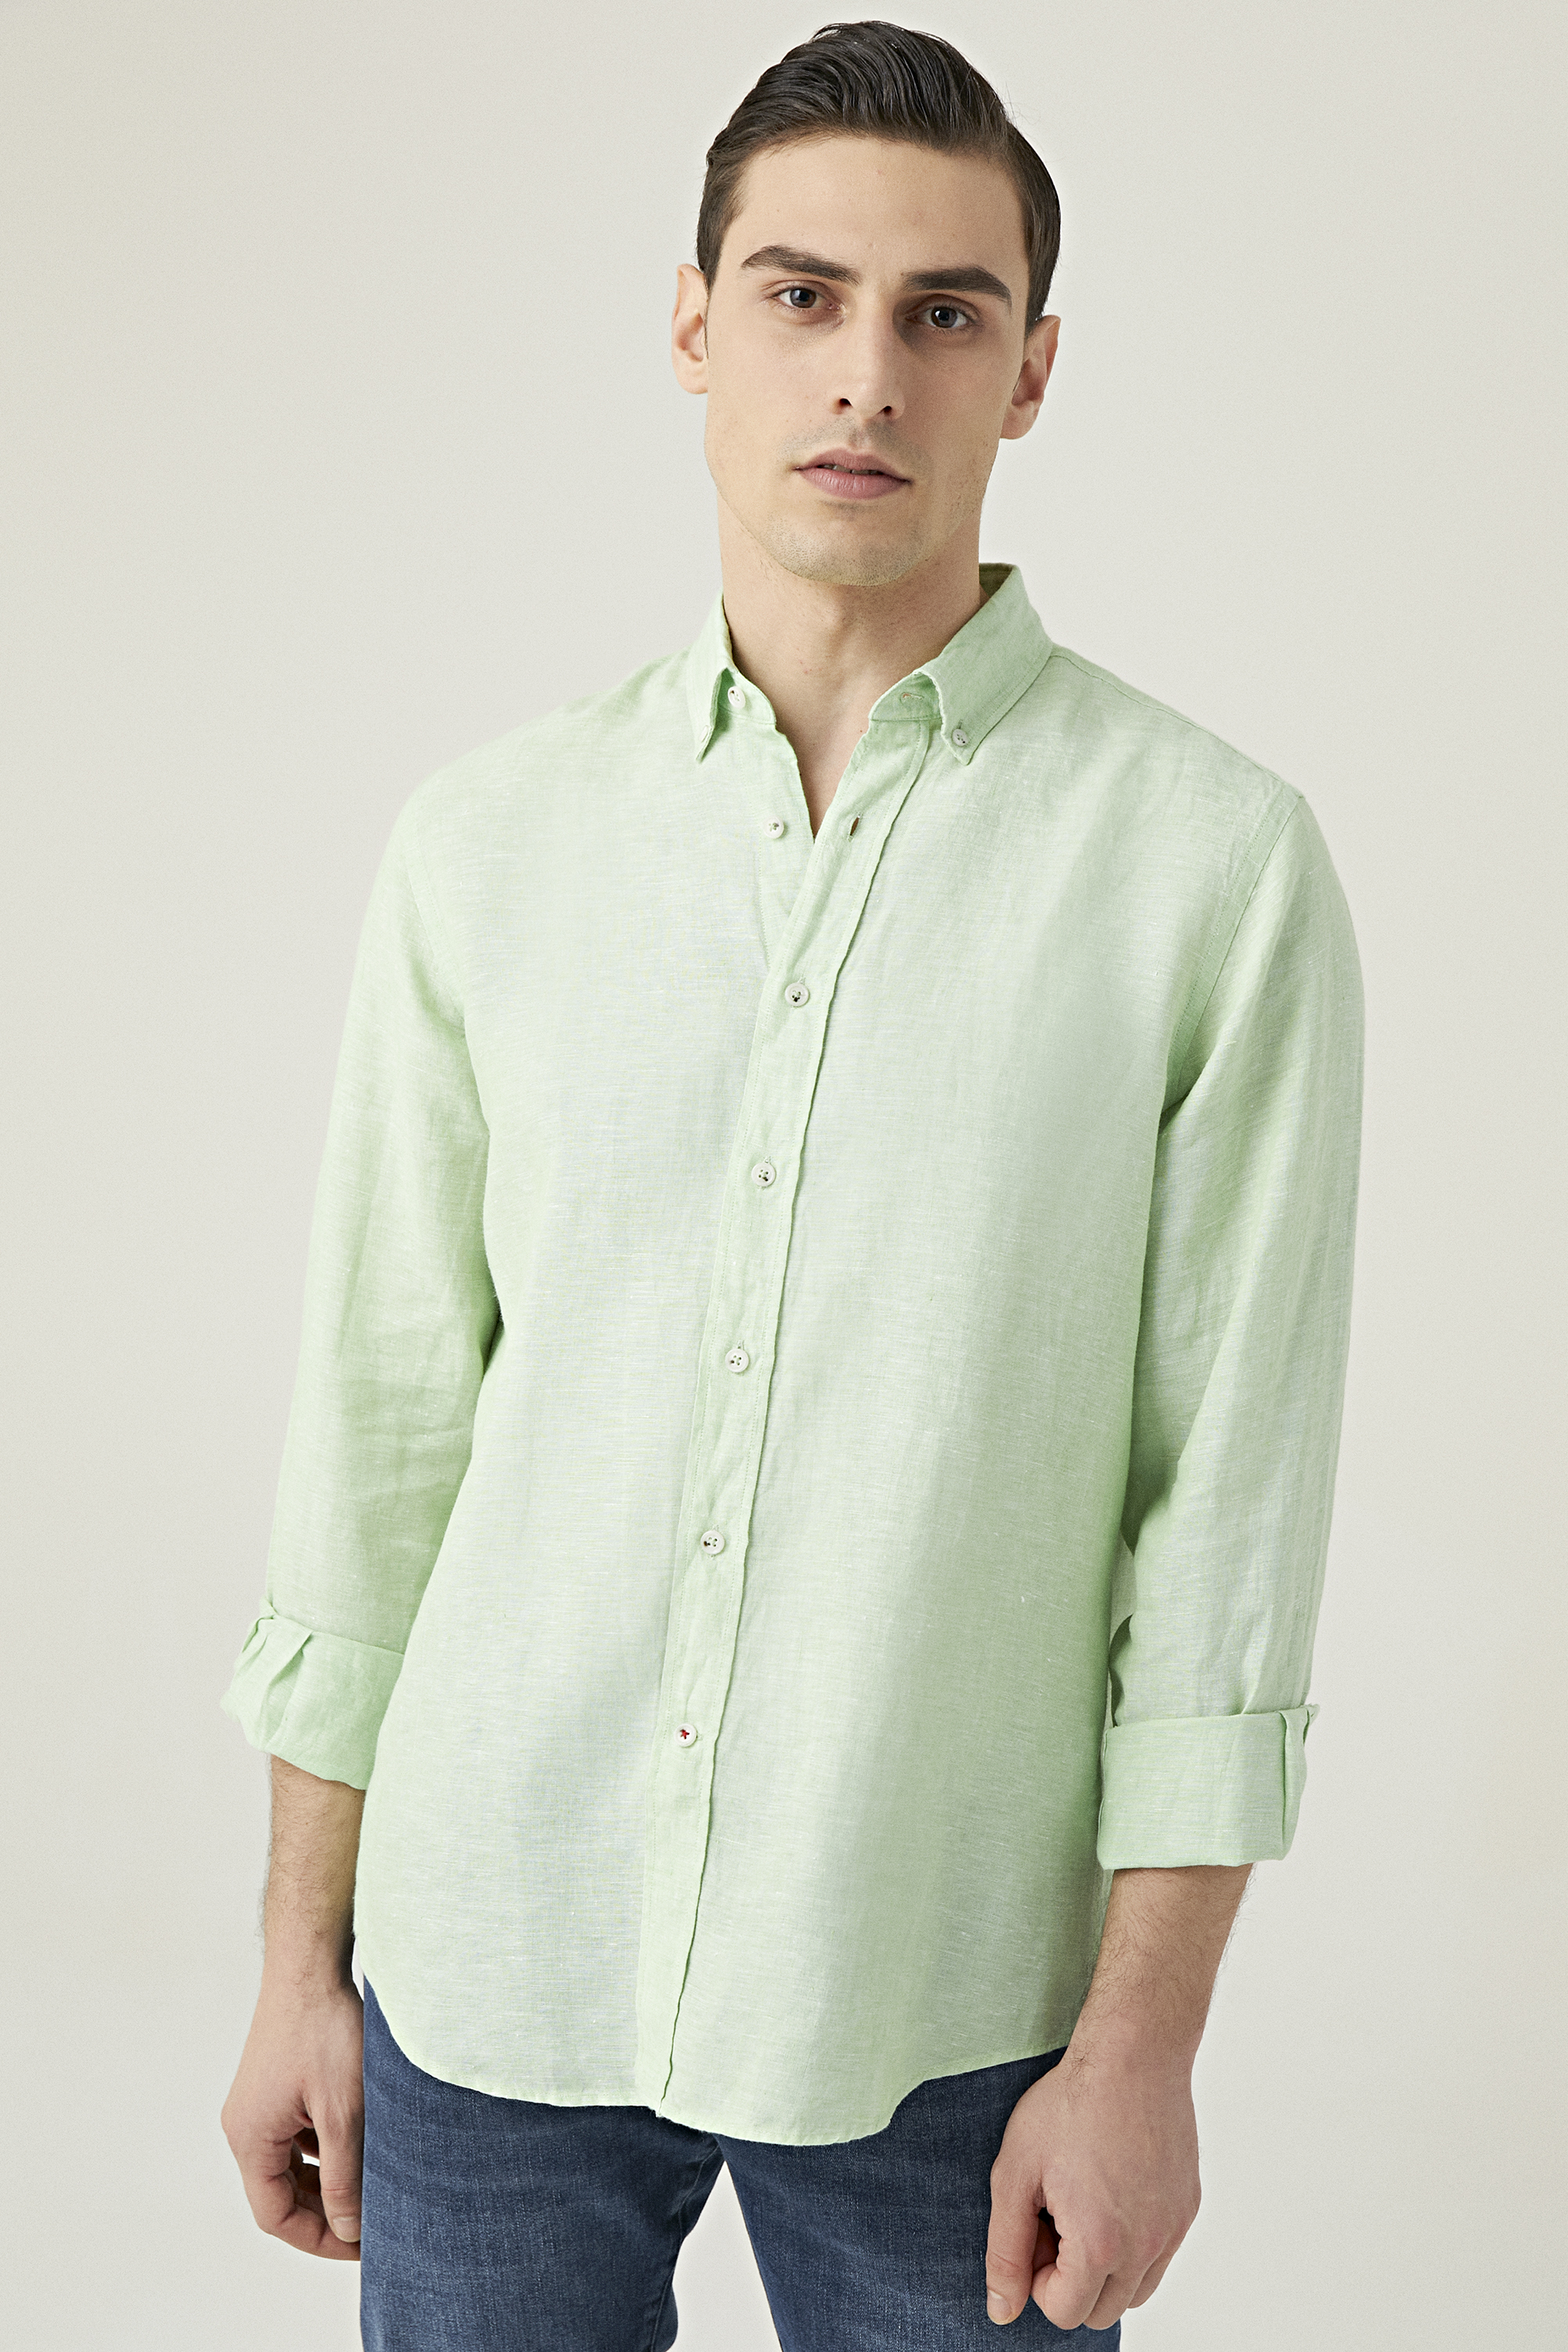 Damat Tween Damat Comfort Yeşil Düz %100 Keten Gömlek. 1